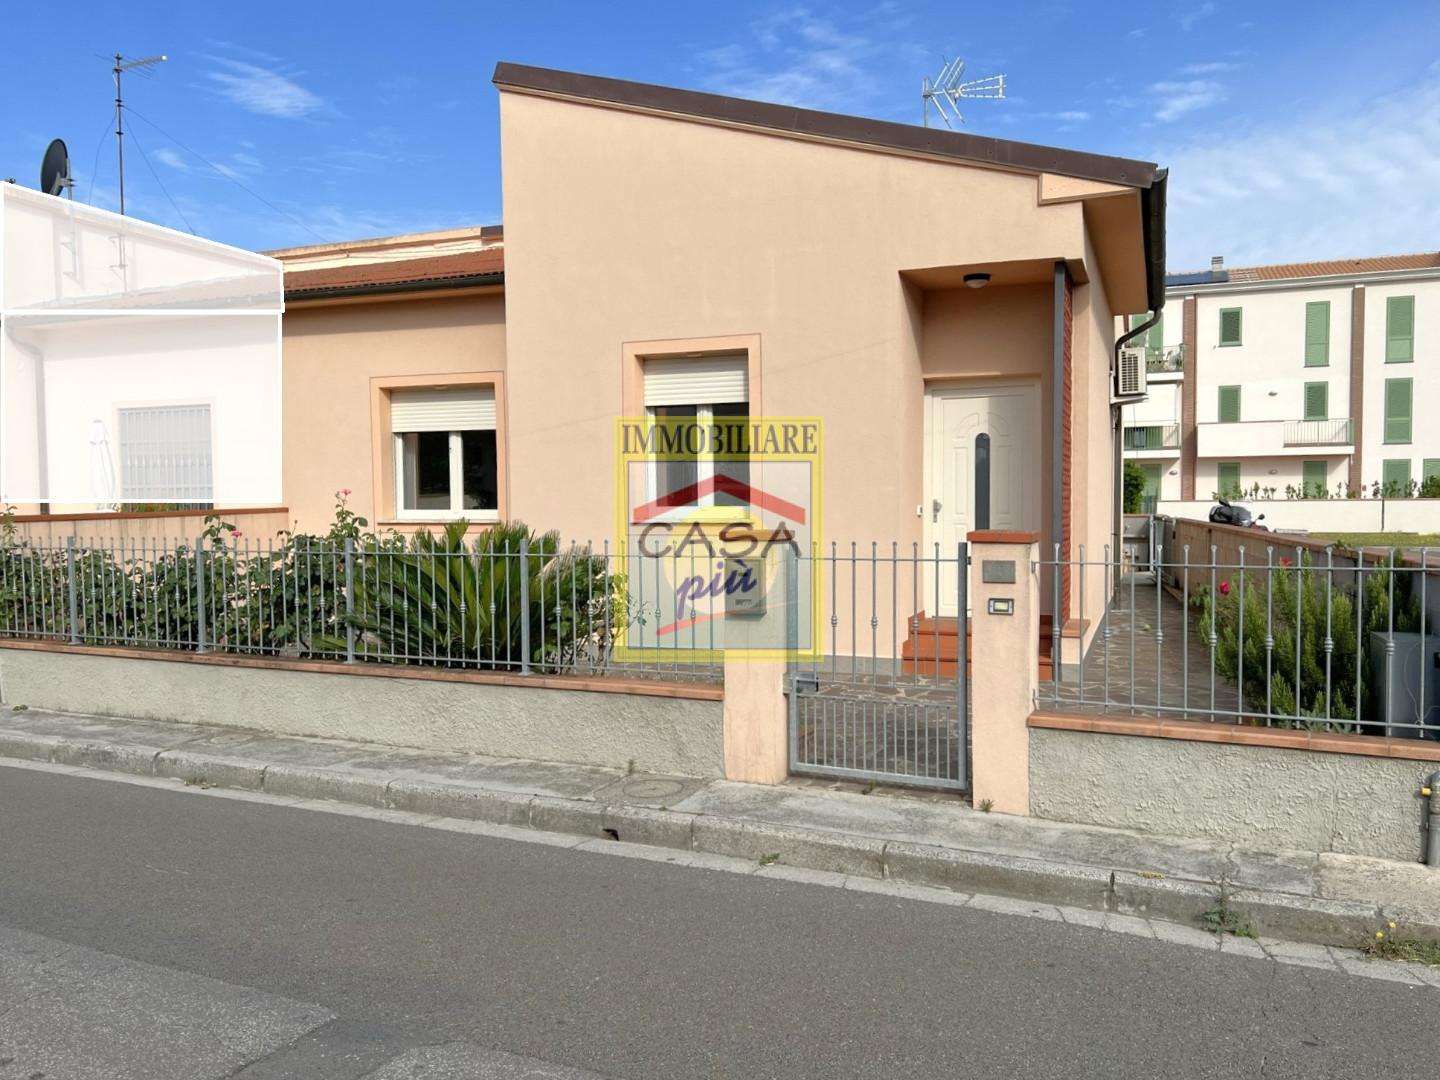 Casa Bi - Trifamiliare in Vendita a Cascina Via Stradiola,